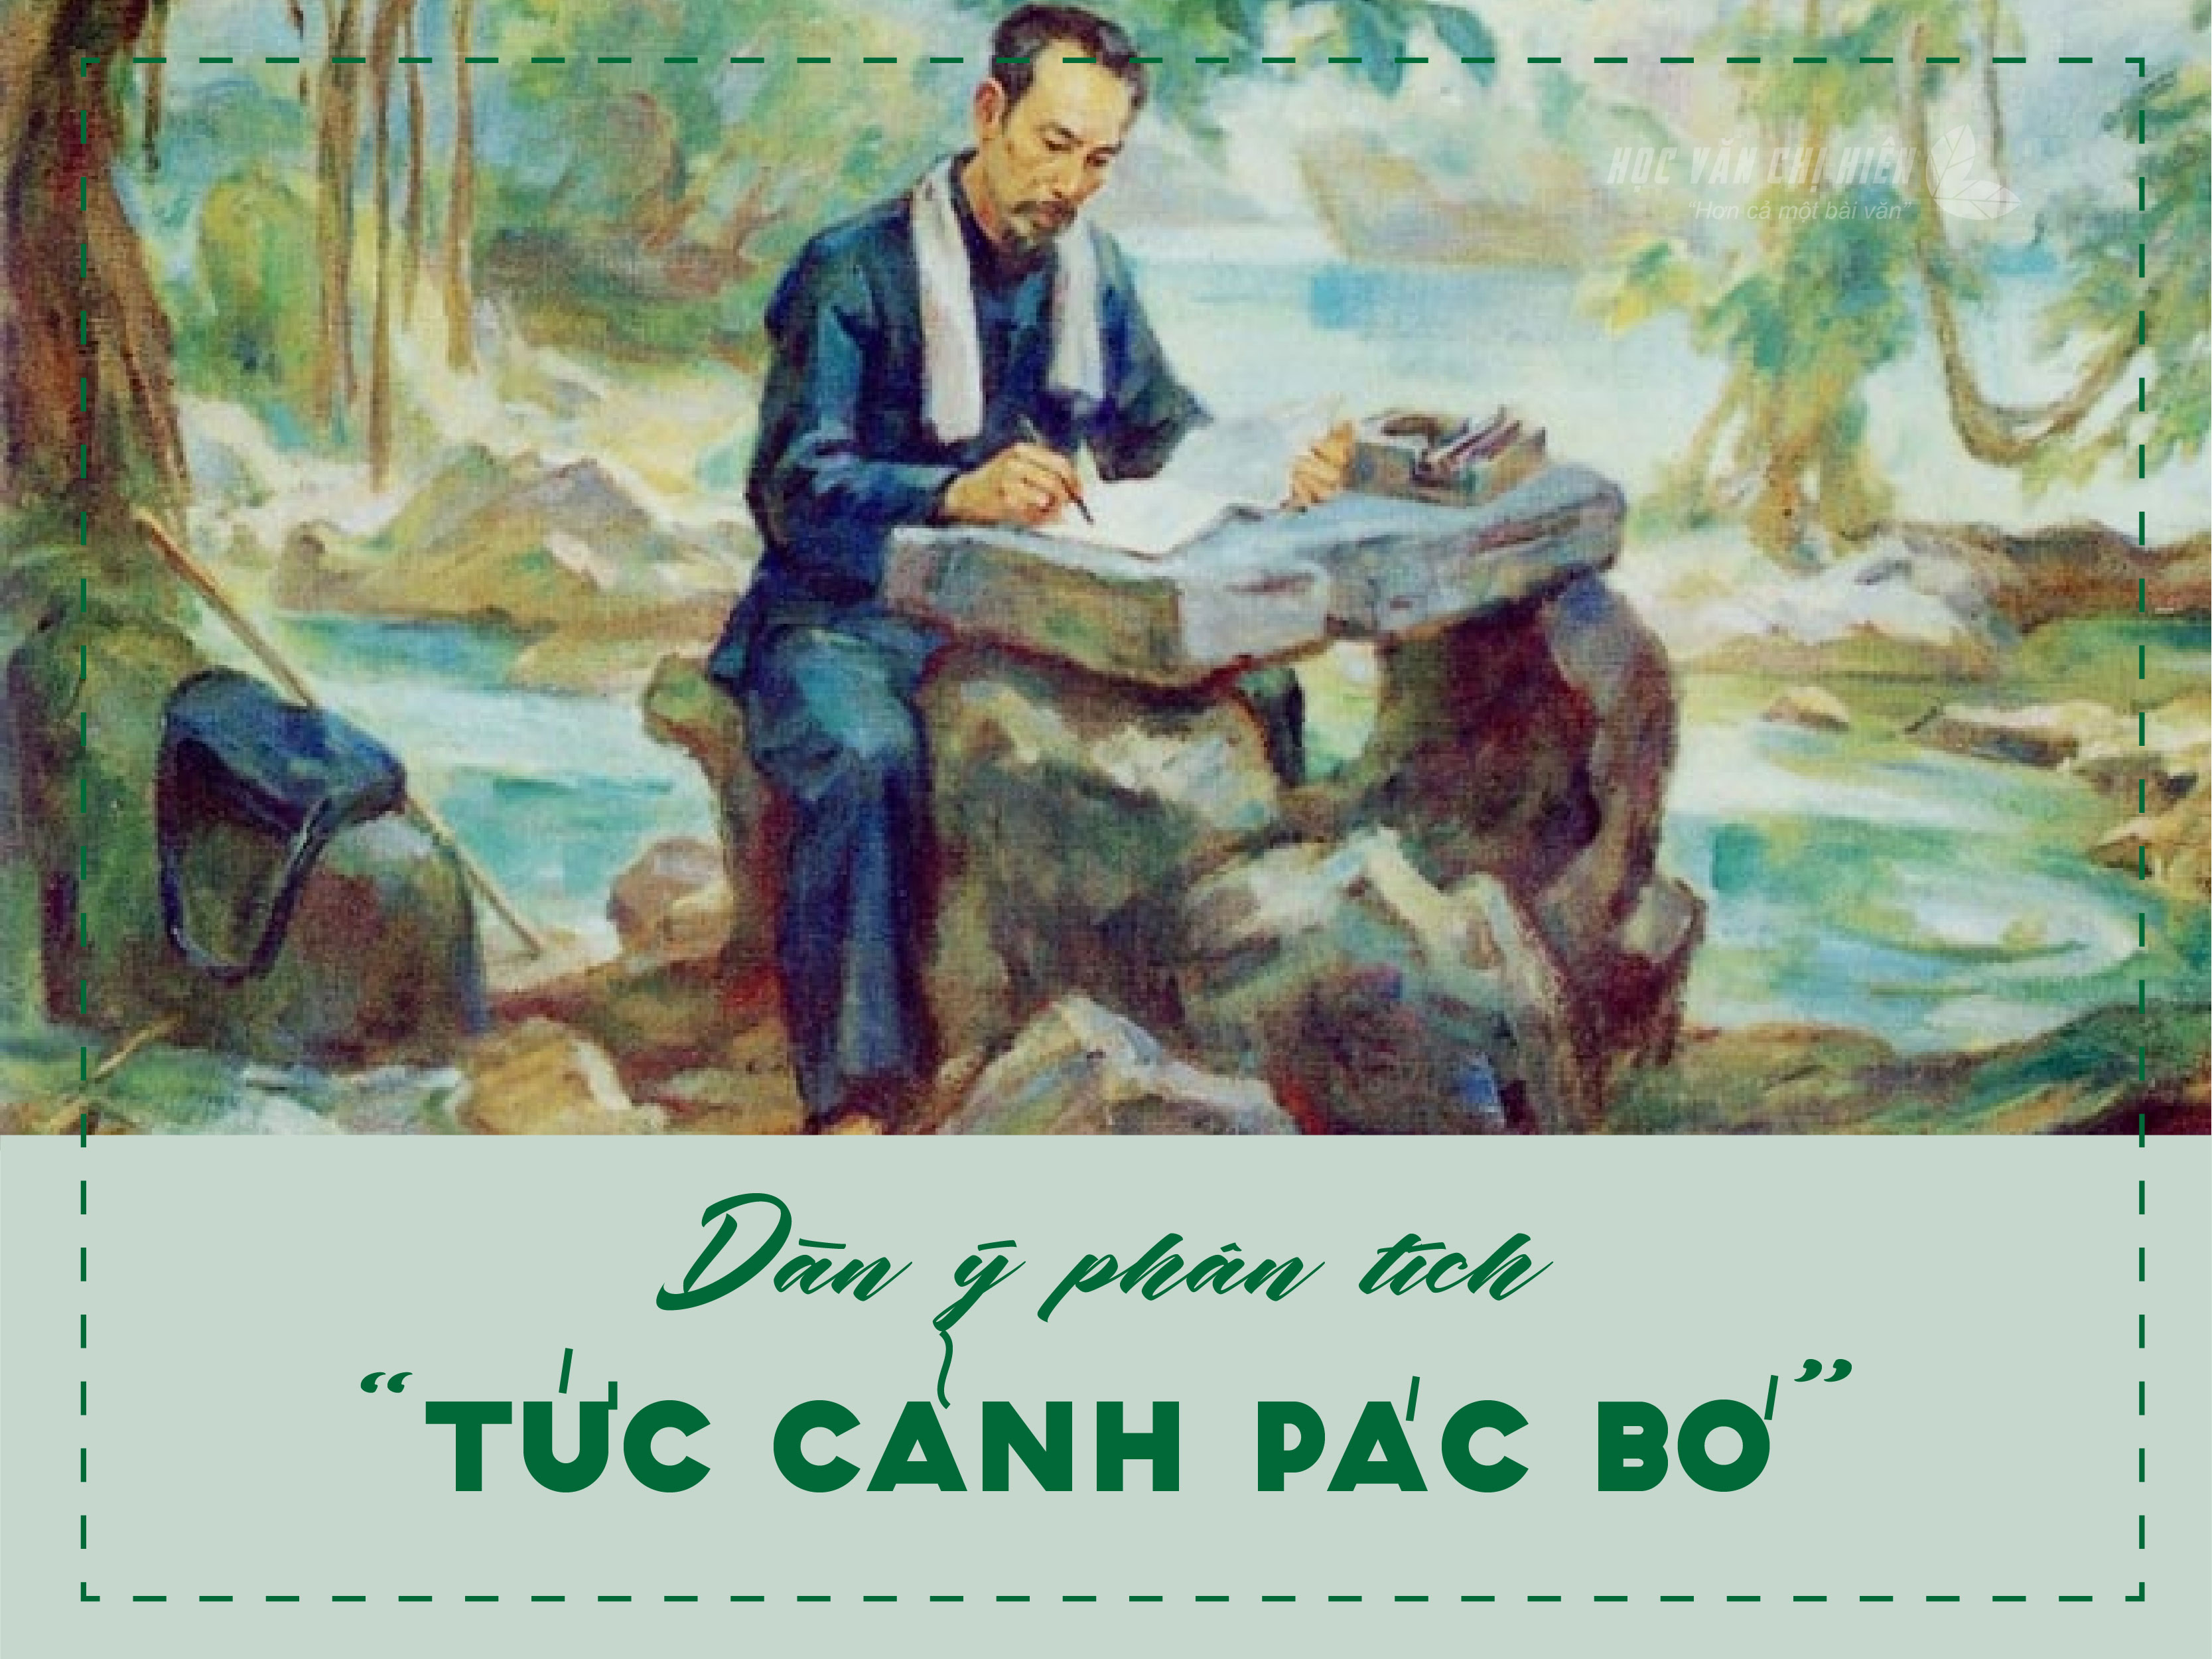 Dàn ý phân tích "Tức cảnh Pác Bó" (Hồ Chí Minh)